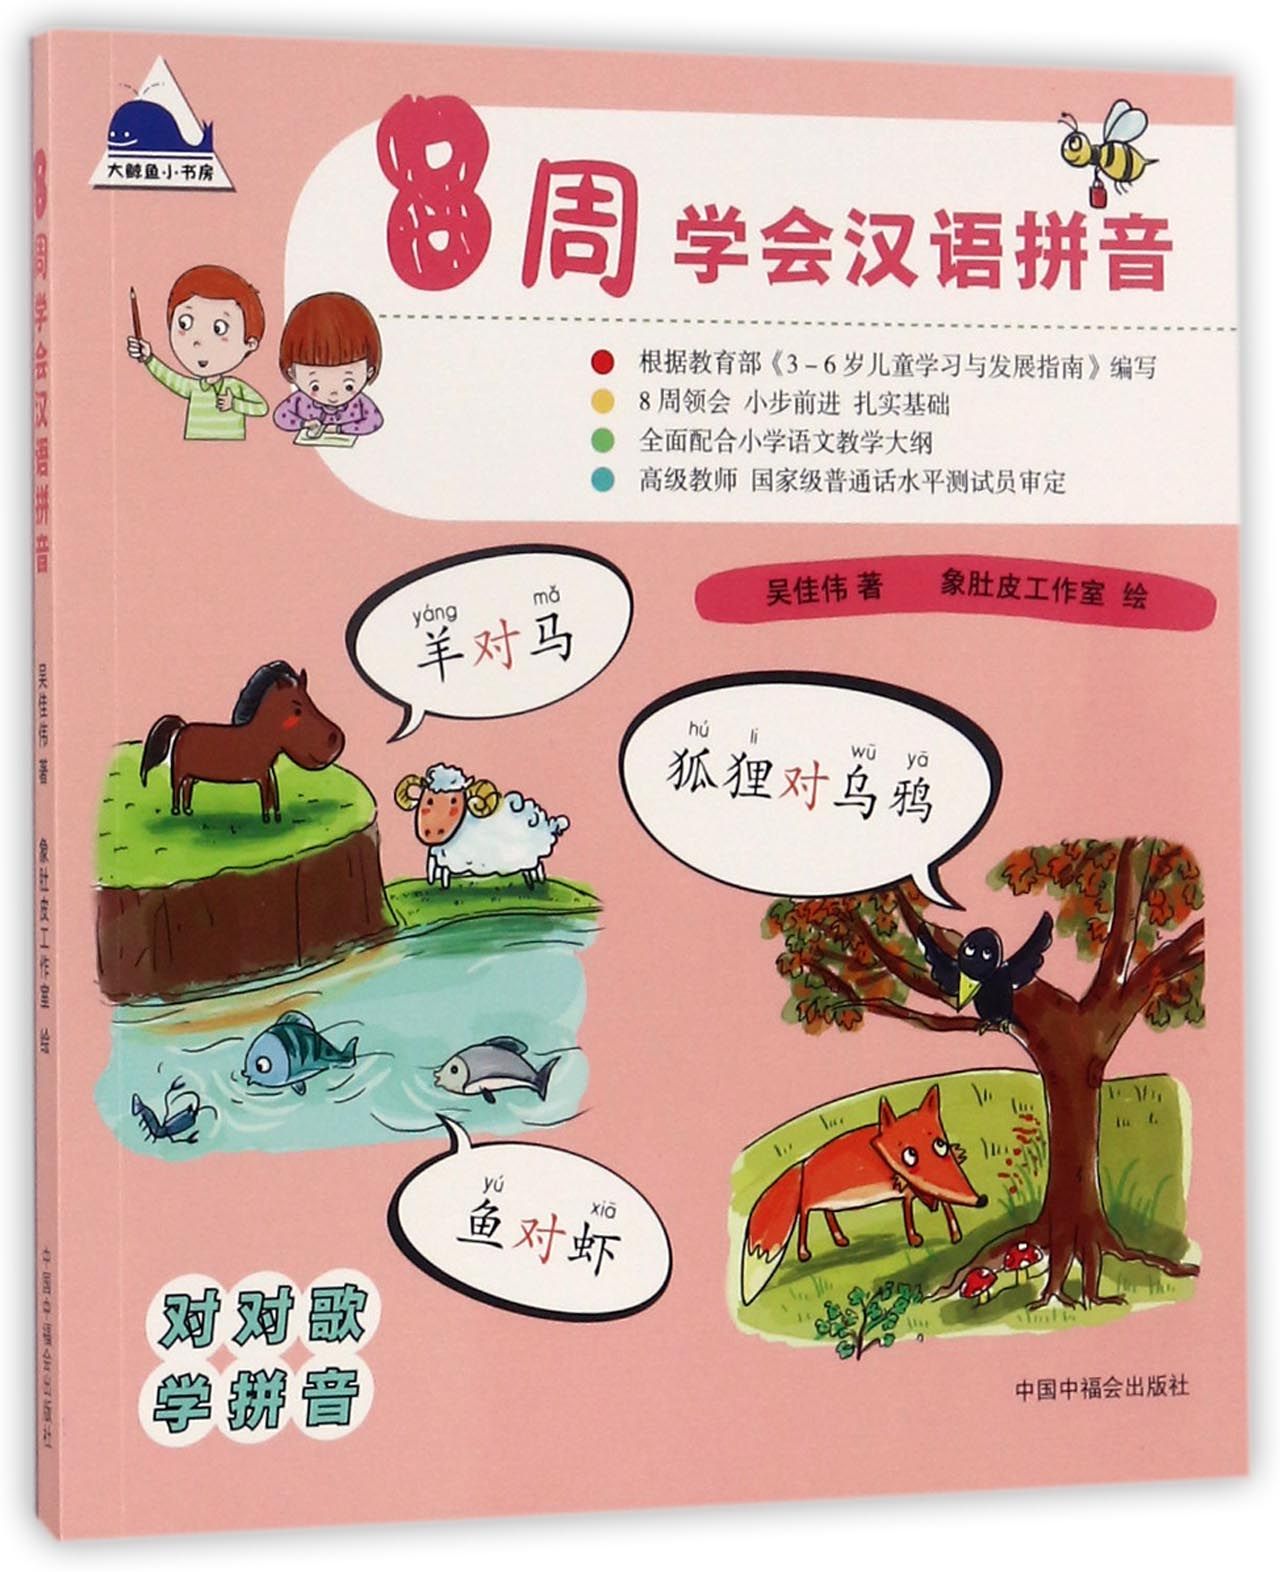 【正版包邮】8周学会汉语拼音吴佳伟|绘画:象肚皮工作室